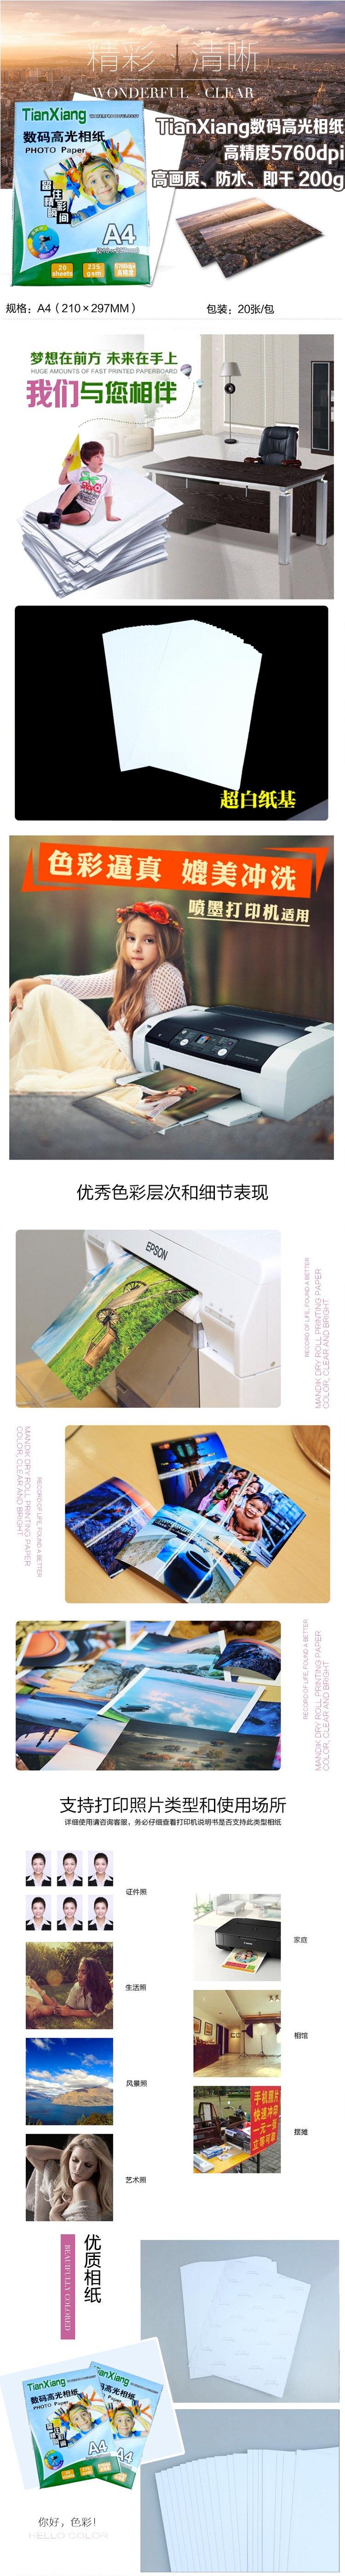 TianXiang家庭办公室必备数码高光相纸高精度5760dpi高画质防水即干 200g 20张/包